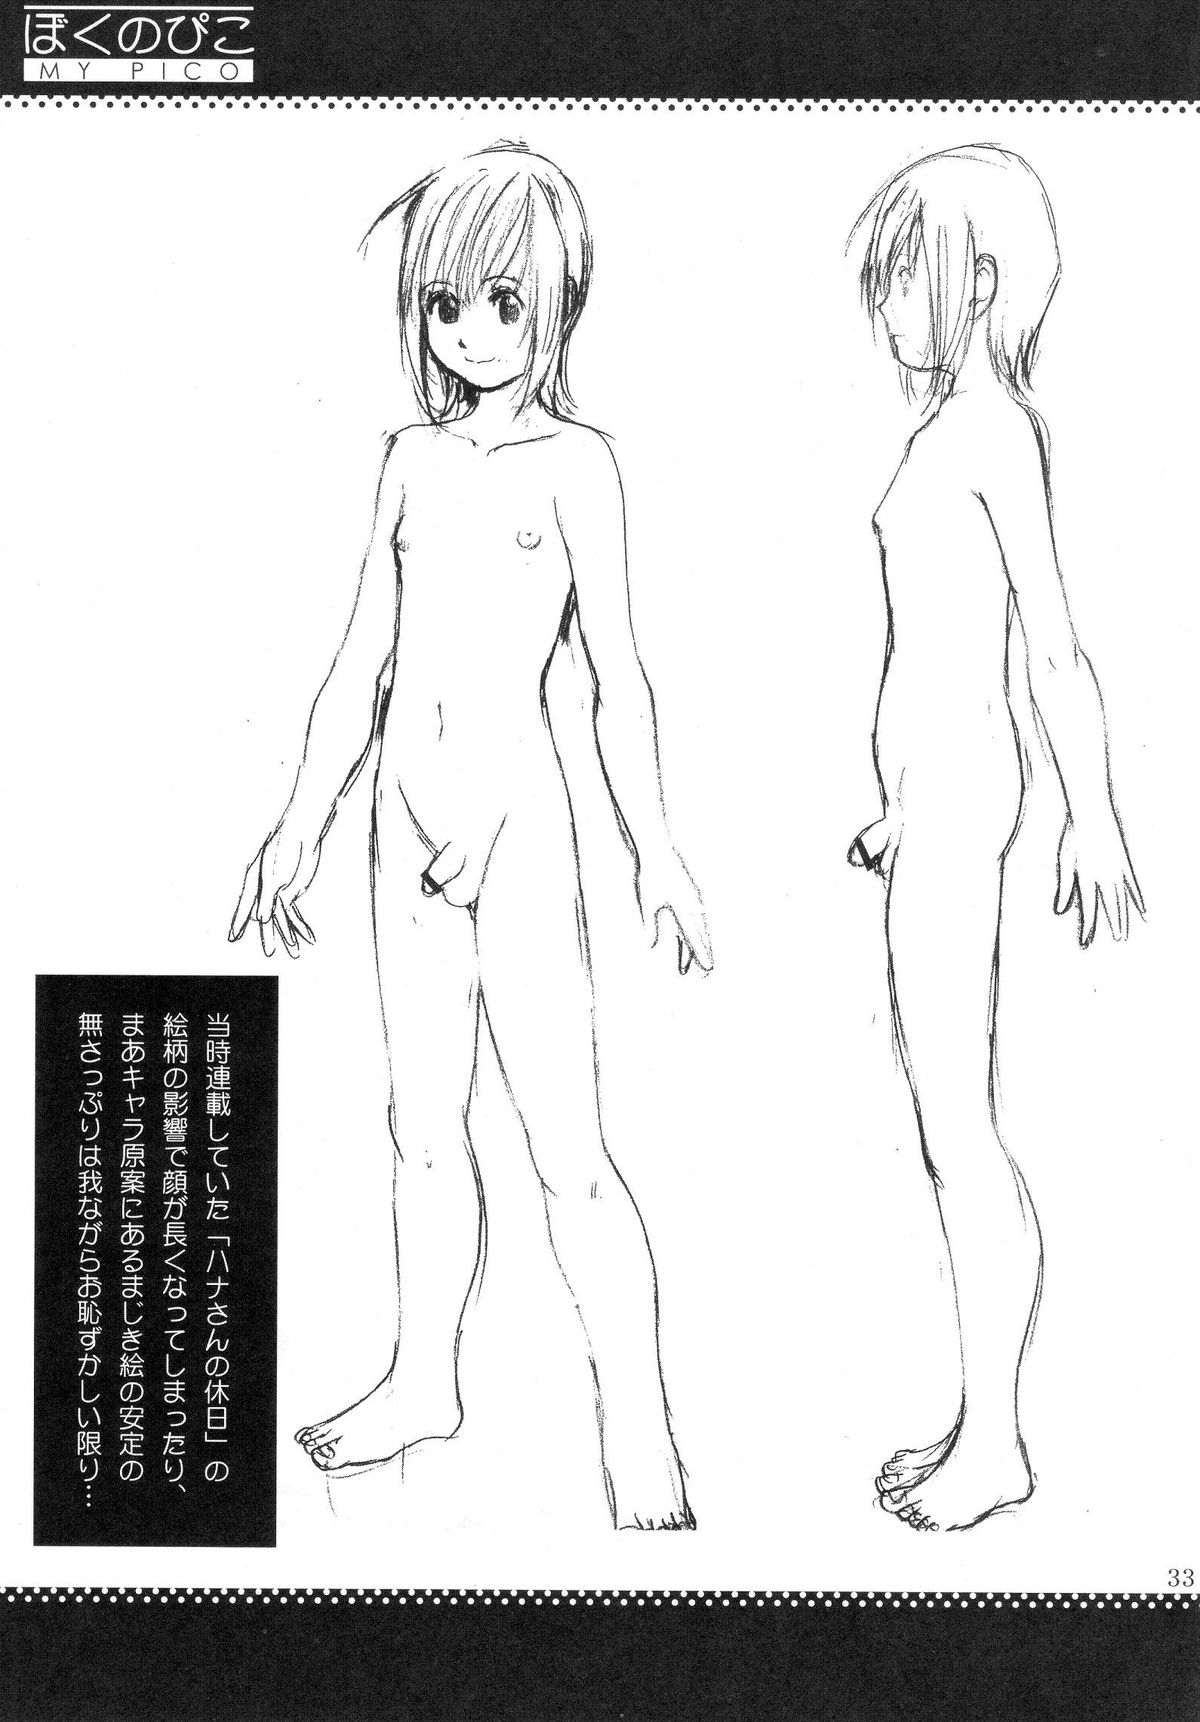 (COMIC1) [Saigado] Boku no Pico Comic + Koushiki Character Genanshuu (Boku no Pico) page 31 full